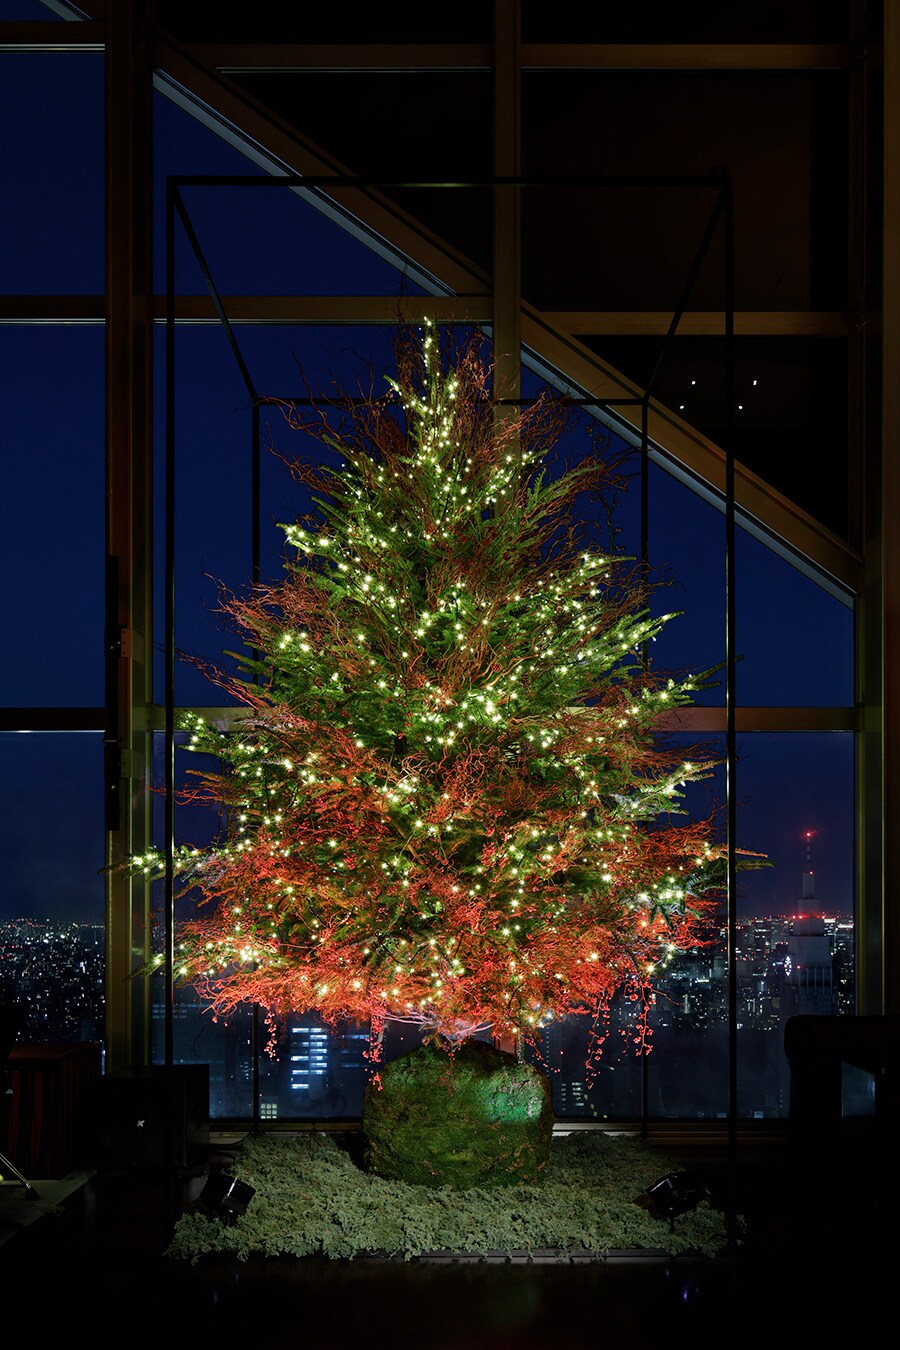 「パークハイアット東京」の過去のクリスマスツリー。